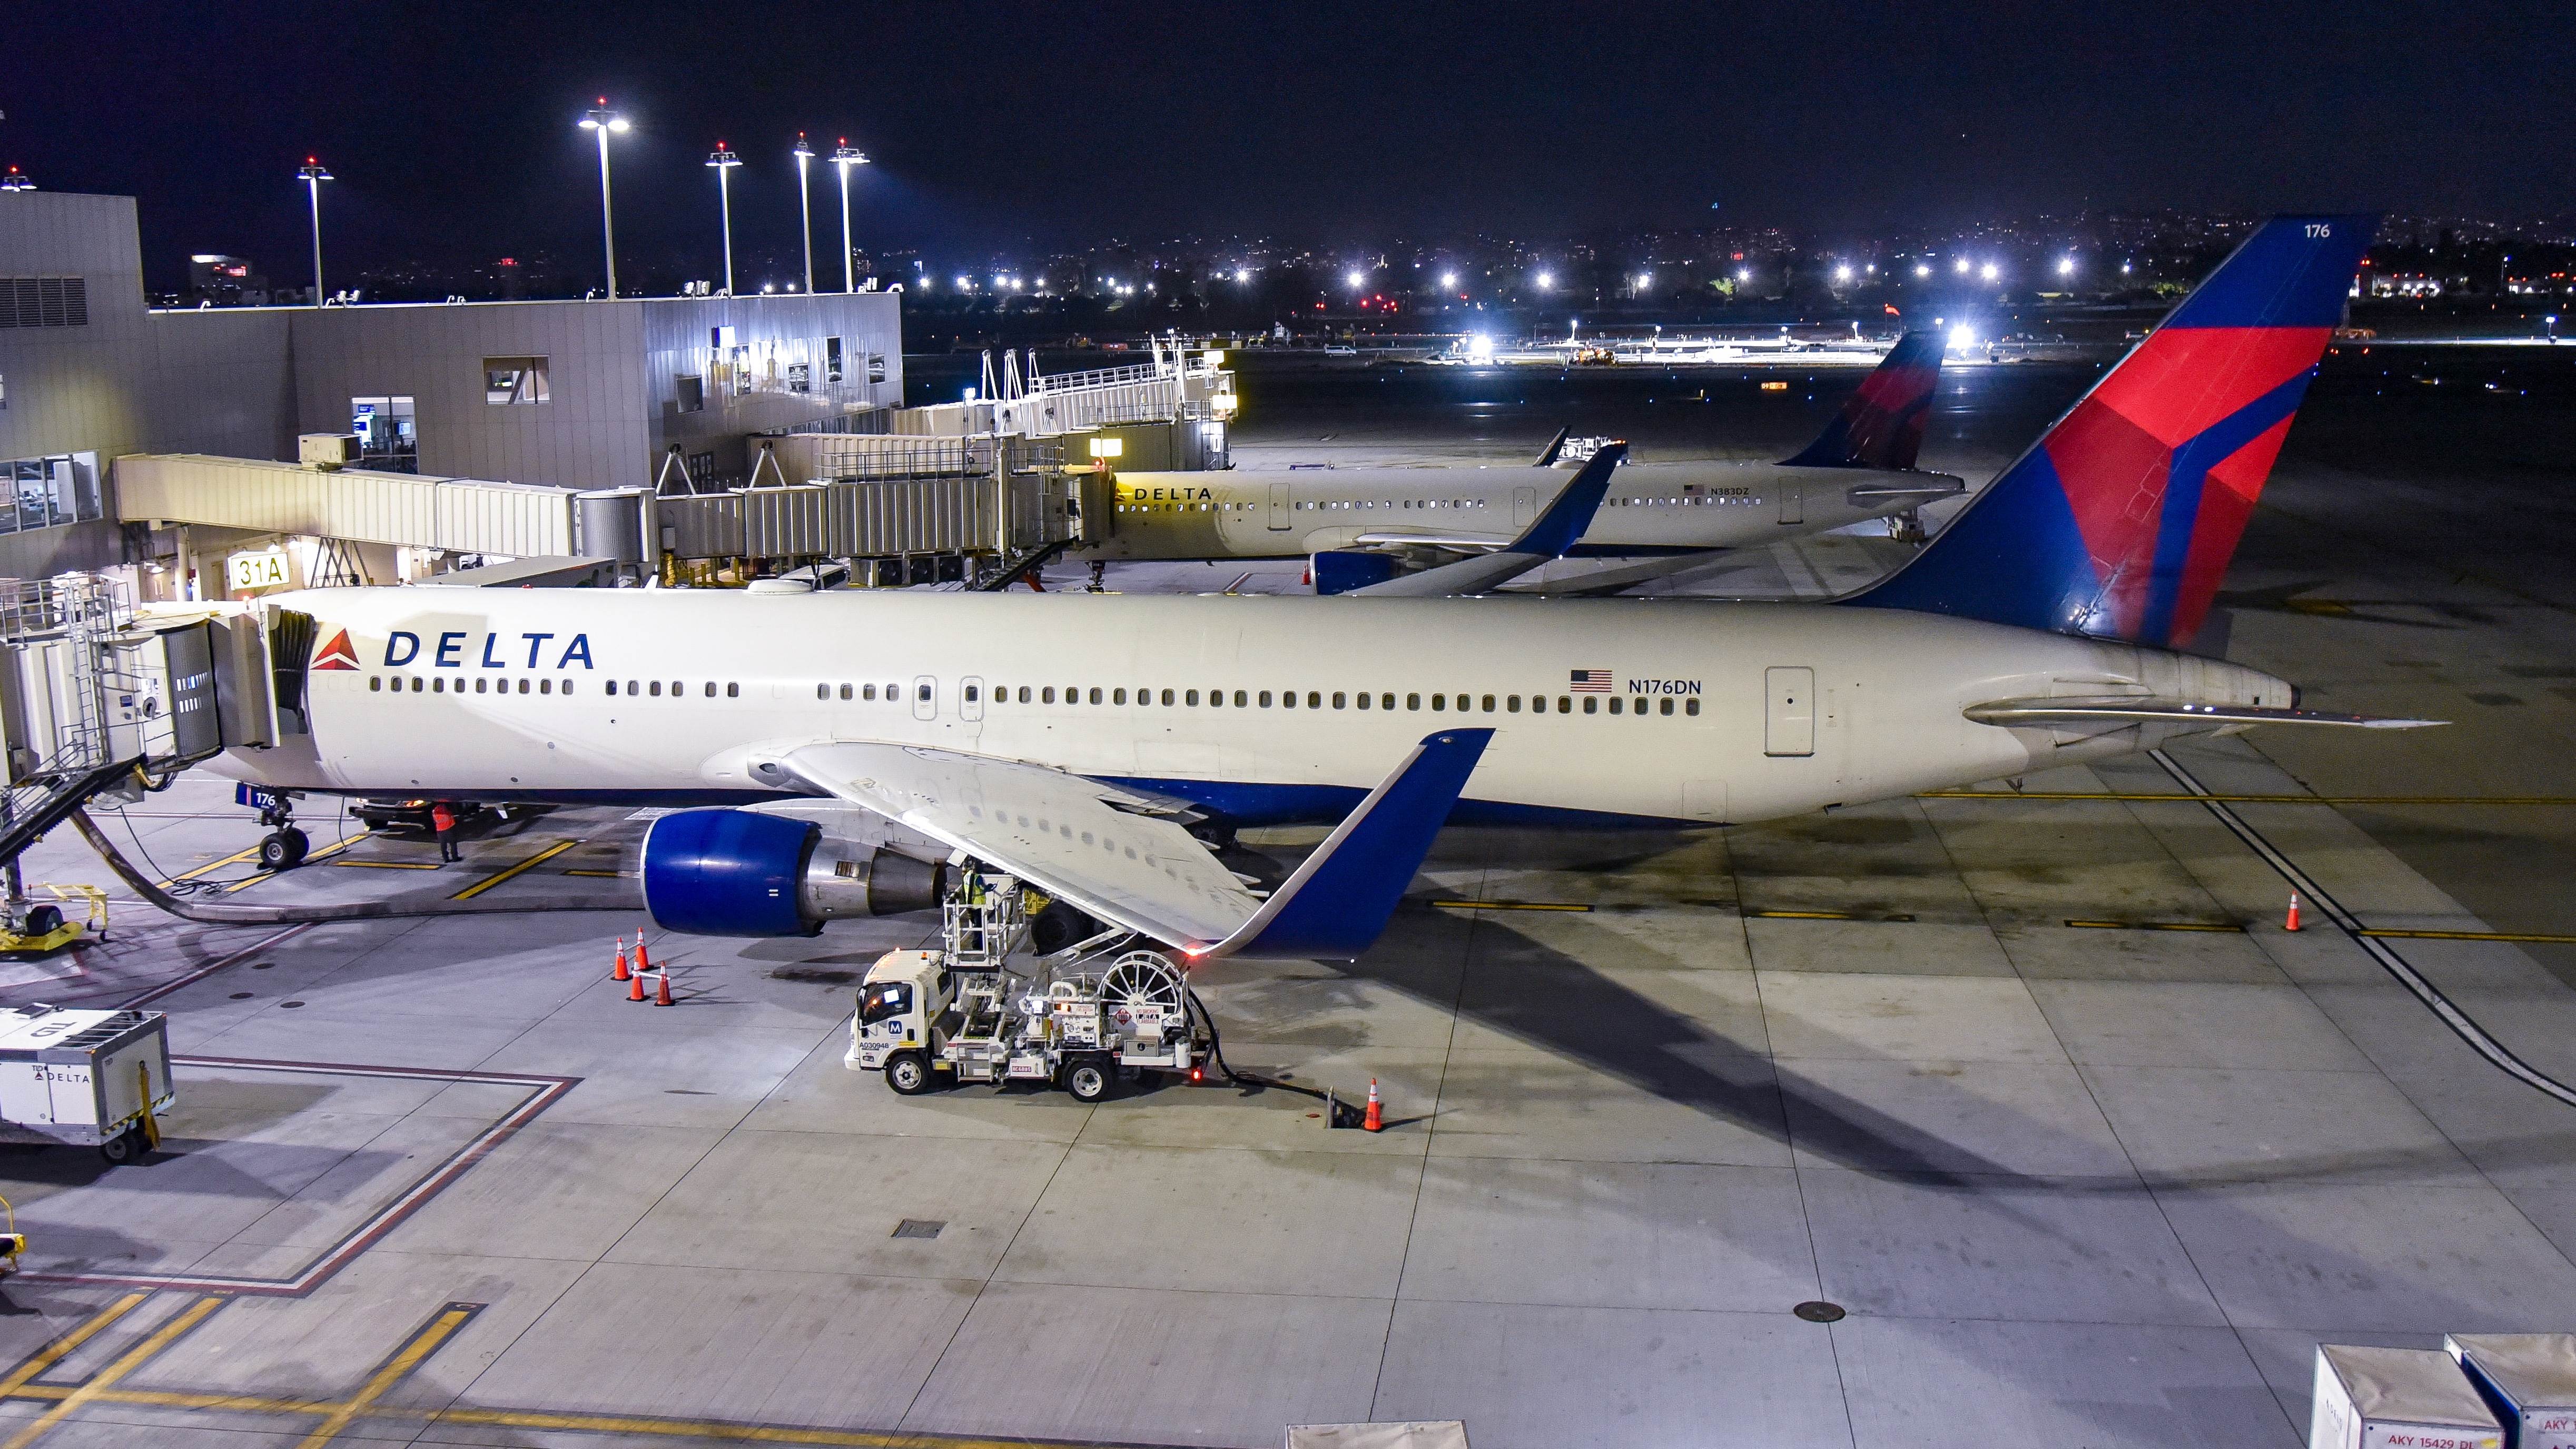 ϿɻDL960 767-300ER LAX-JFK Delta One